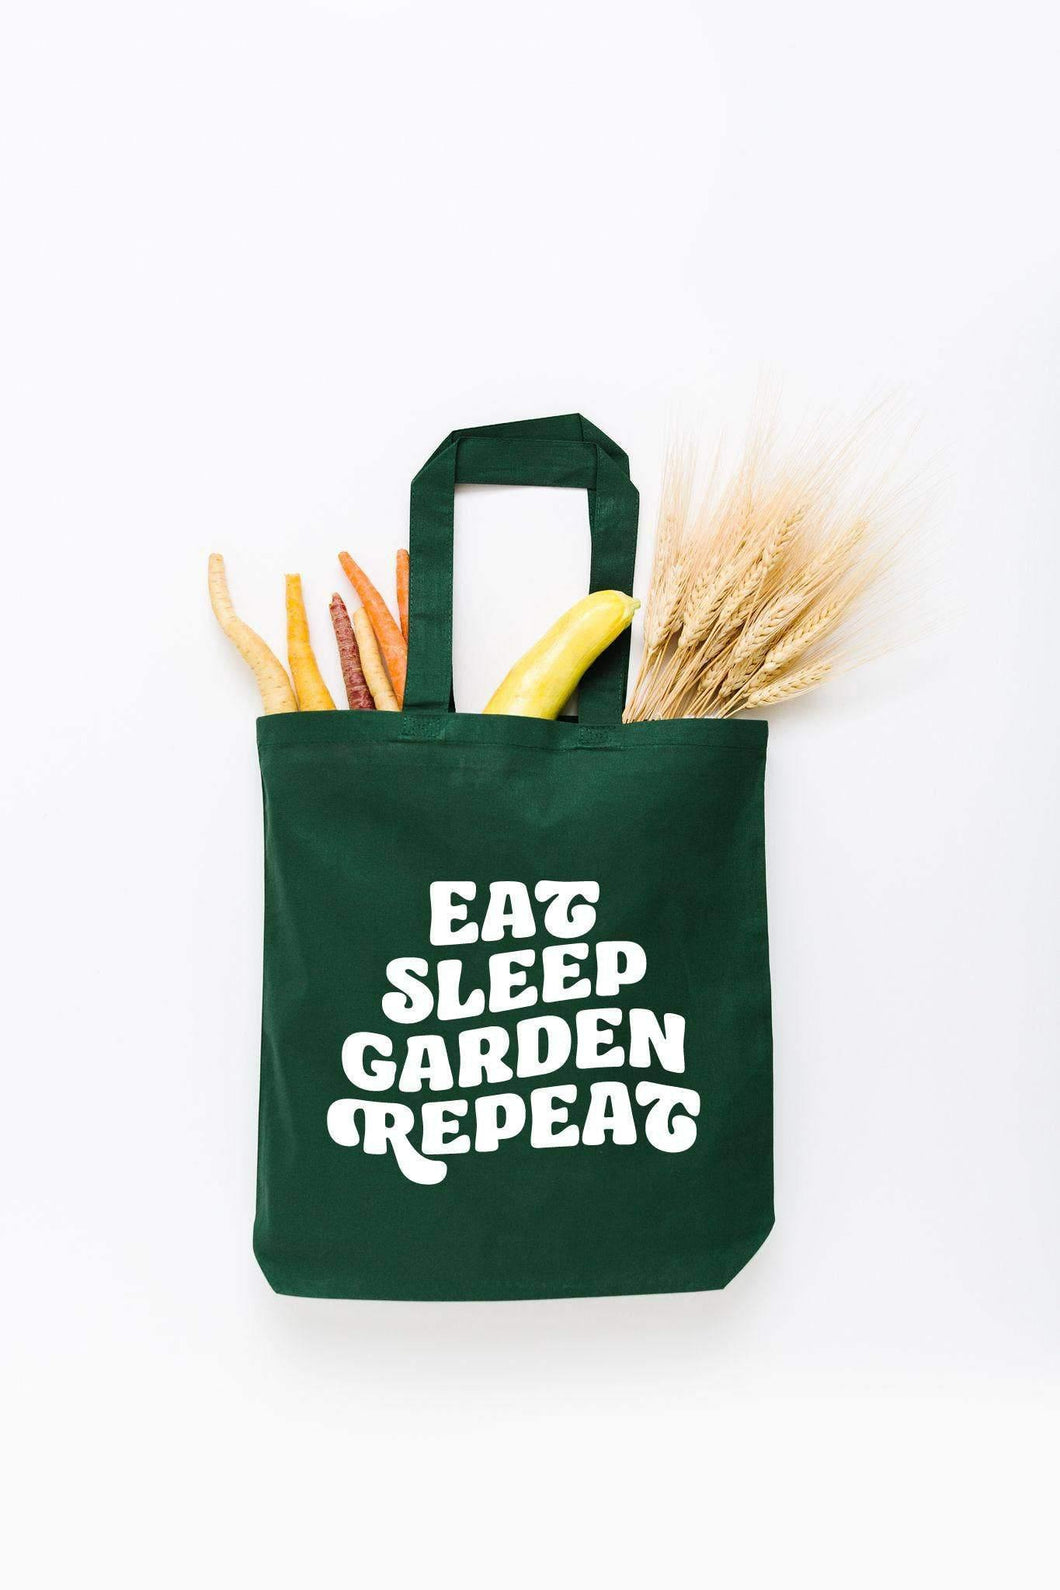 Eat, Sleep, Garden, Repeat Tote Bag - Small - Minimal Optimist, LLC